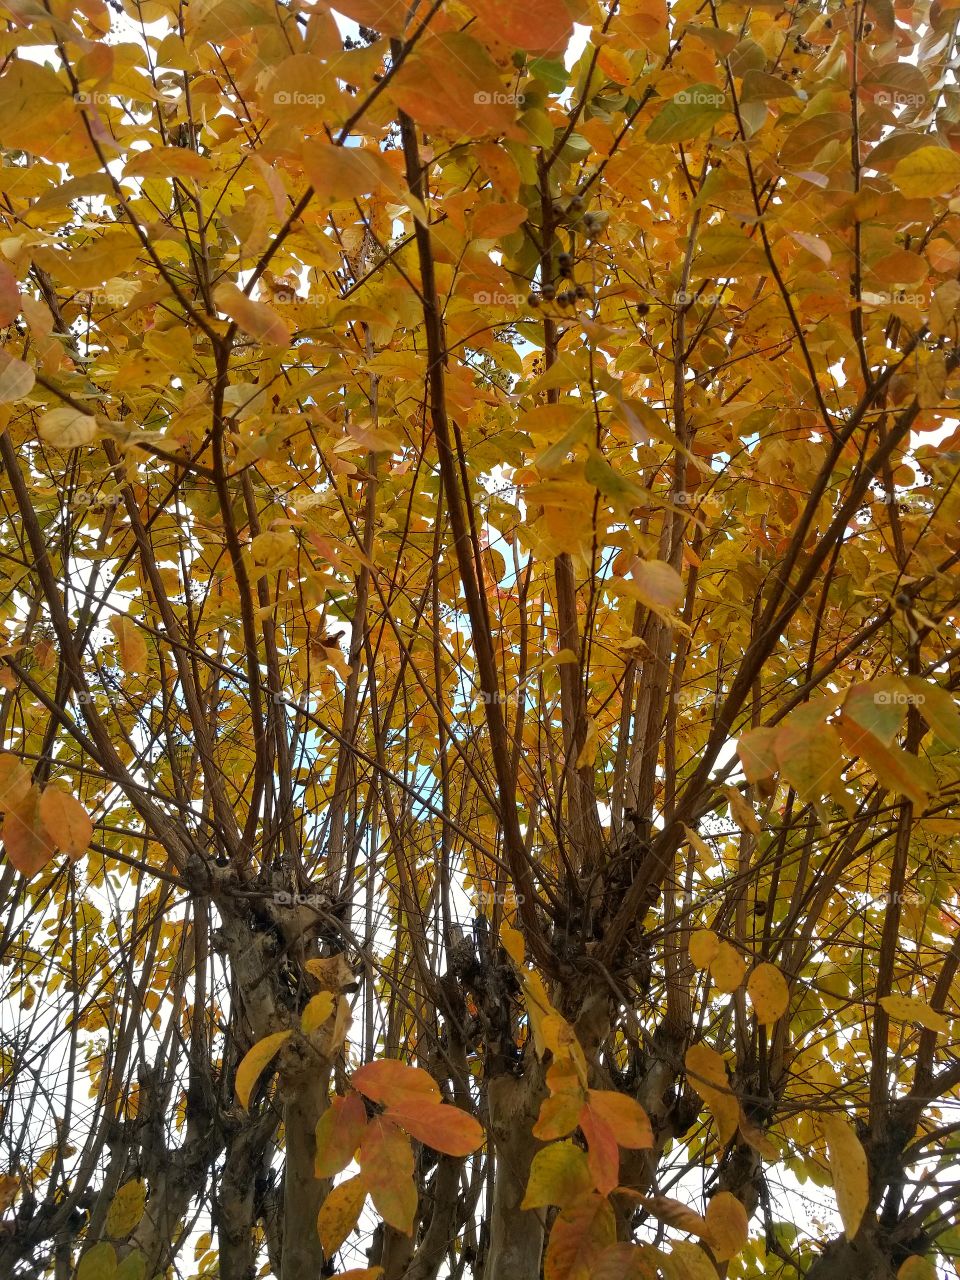 Yellowish-orange leaves on tree.